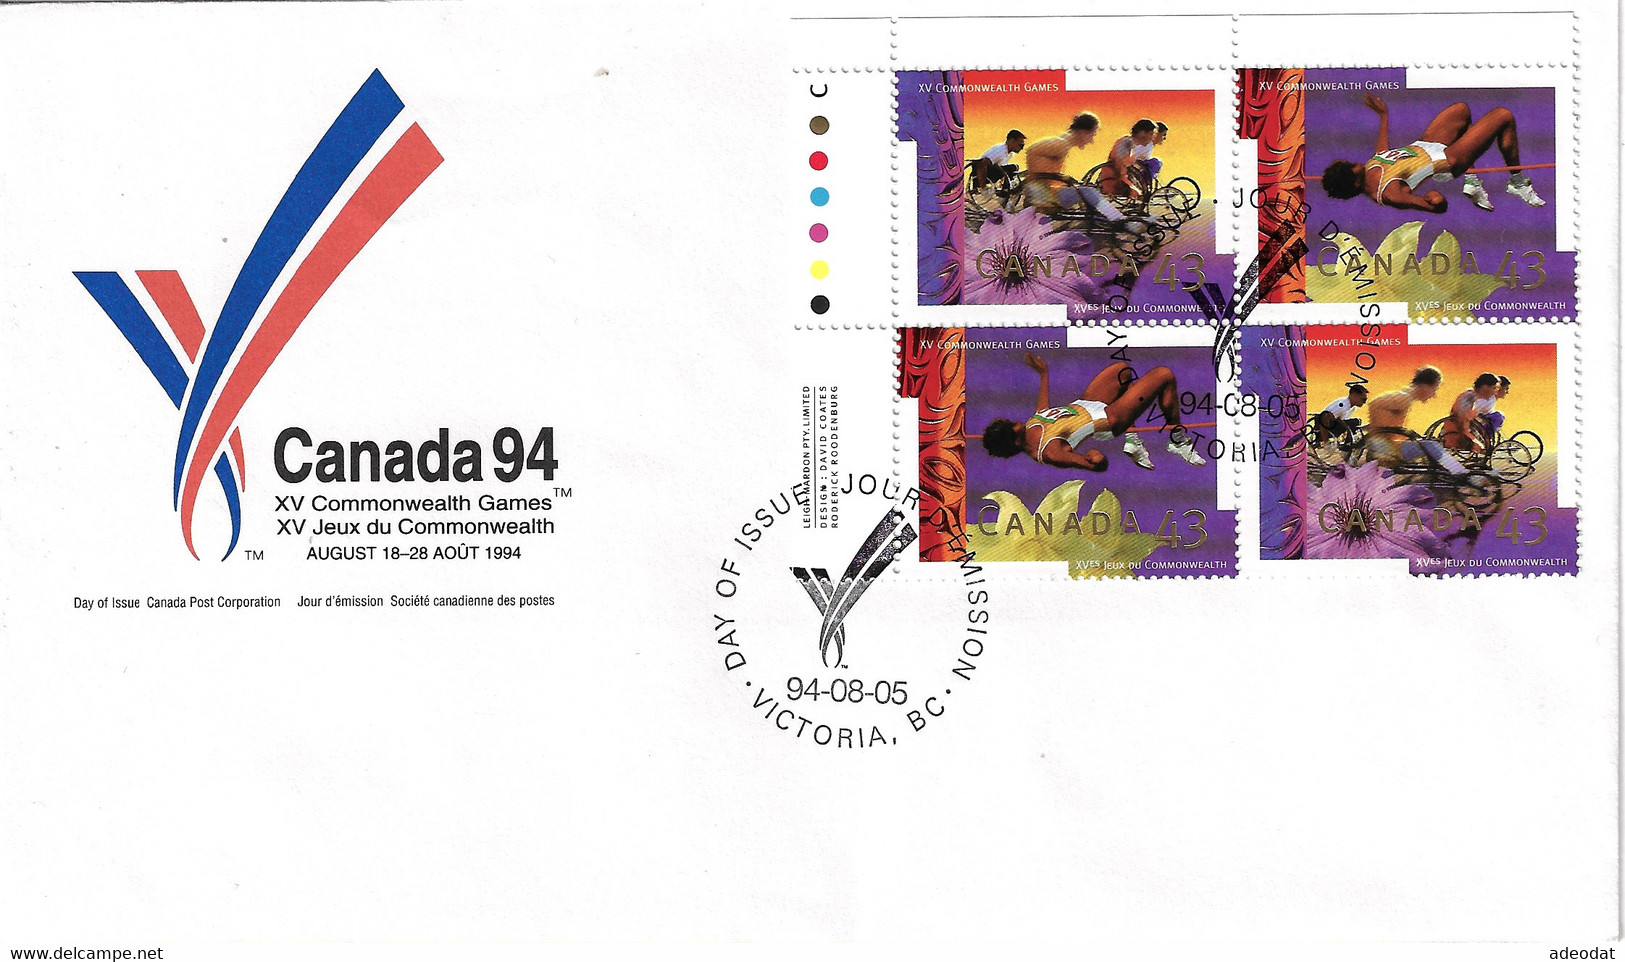 CANADA 1994 SCOTT 1519-1520 FDC - 1991-2000